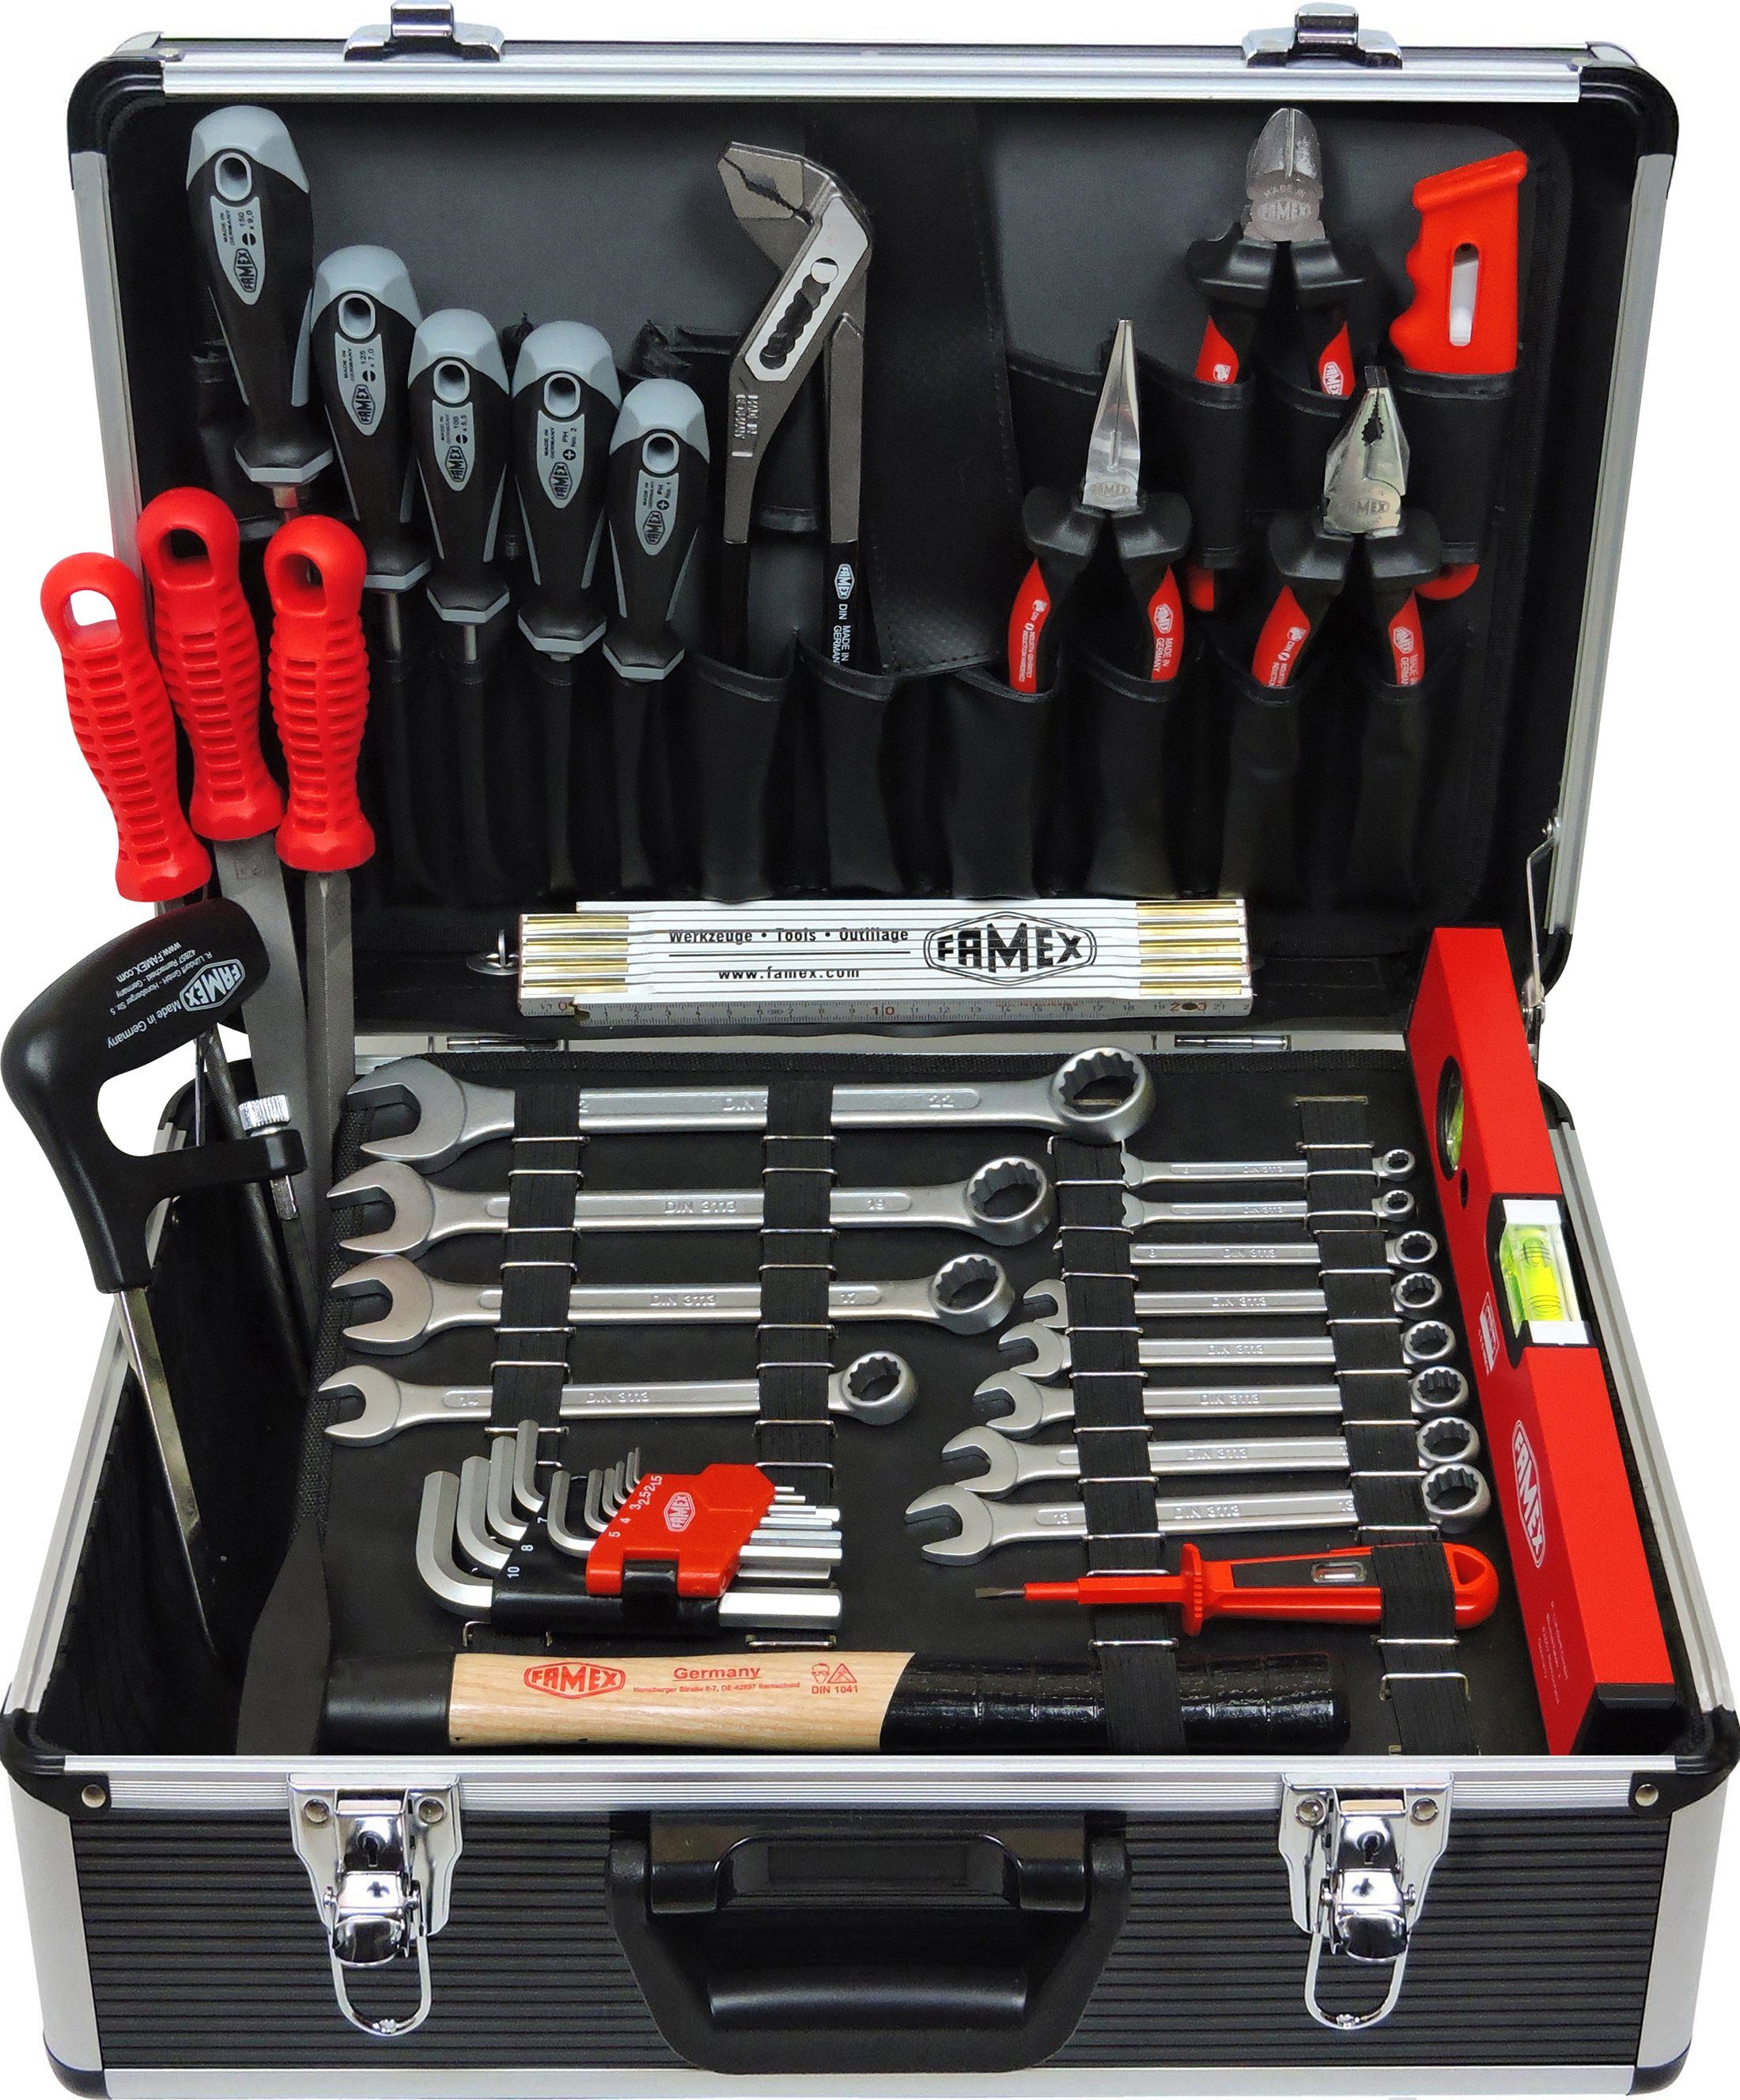 FAMEX Werkzeugset 749-88 Profi Werkzeugkoffer Werkzeug Set gefüllt - PROFESSIONAL, abschließbar mit